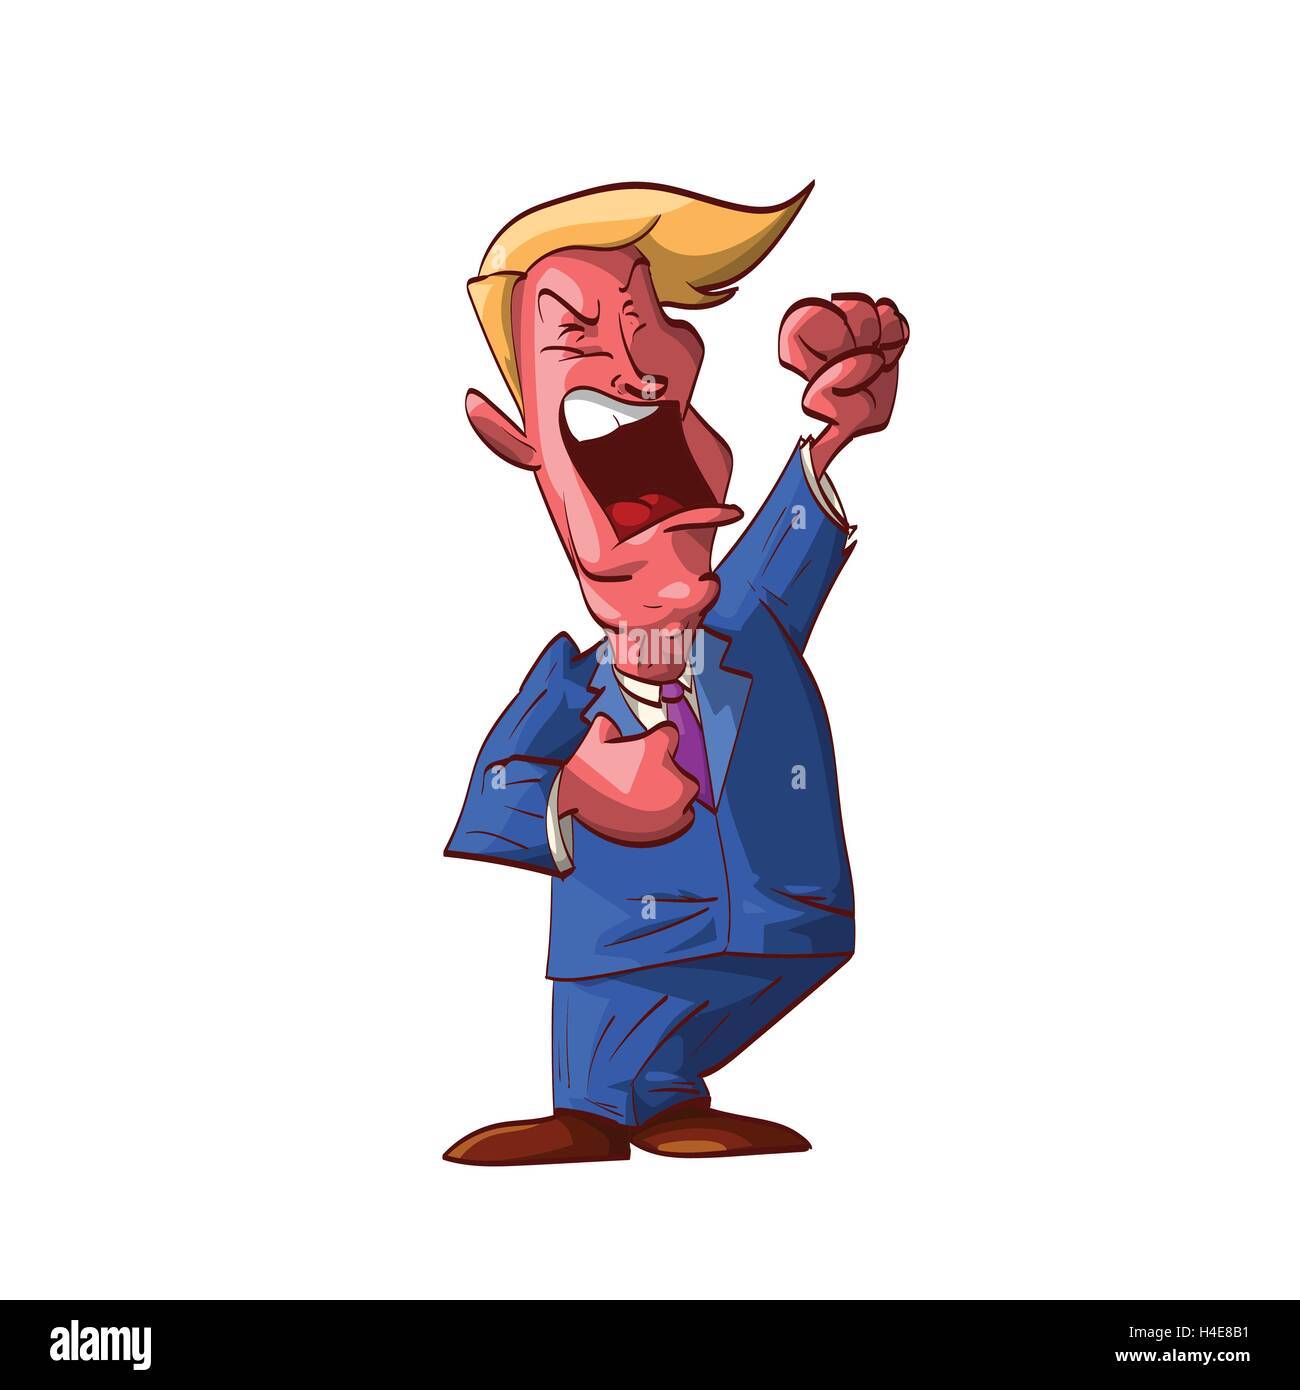 Colorata illustrazione vettoriale di un arrabbiato uomo politico gridando e urlando, diffondono odio. Illustrazione Vettoriale